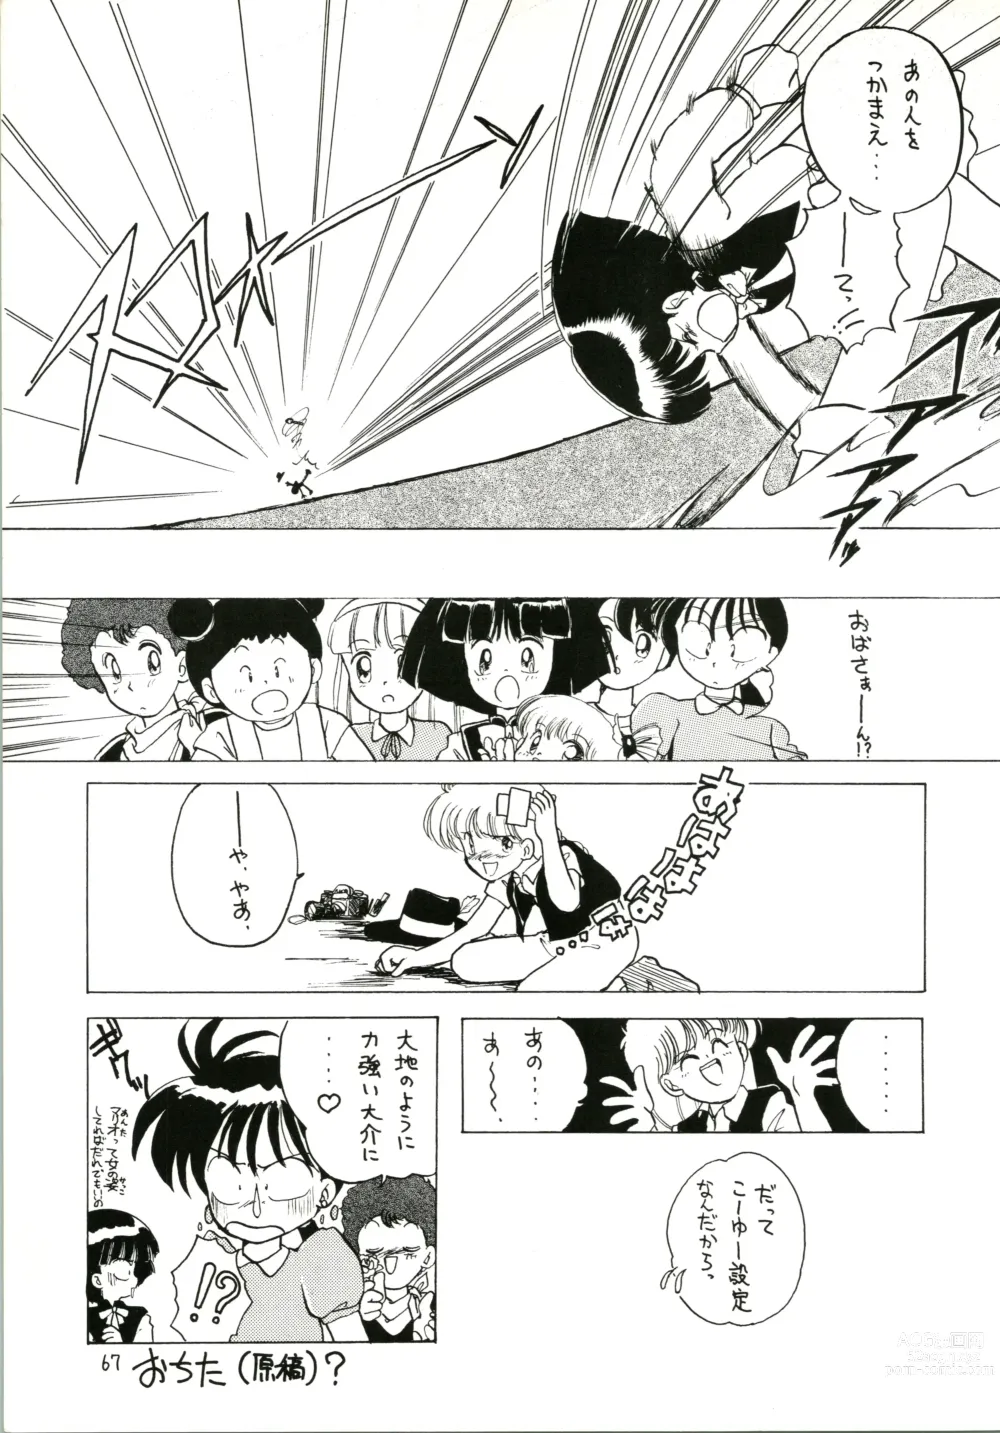 Page 67 of doujinshi Katatoki